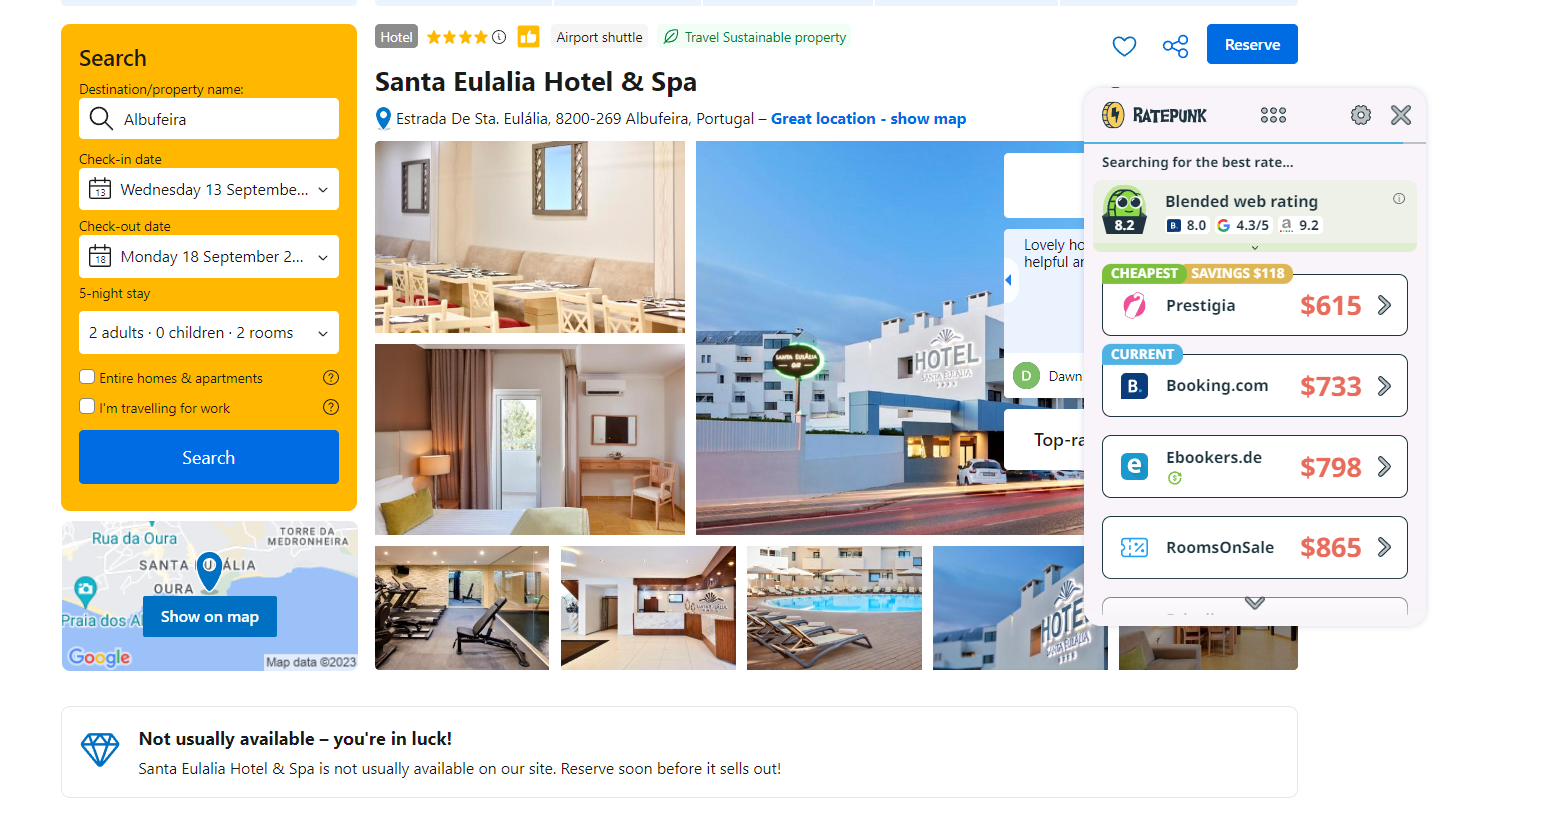 Comparing Favorite Hotel Price Comparison Tools - RatePunk 